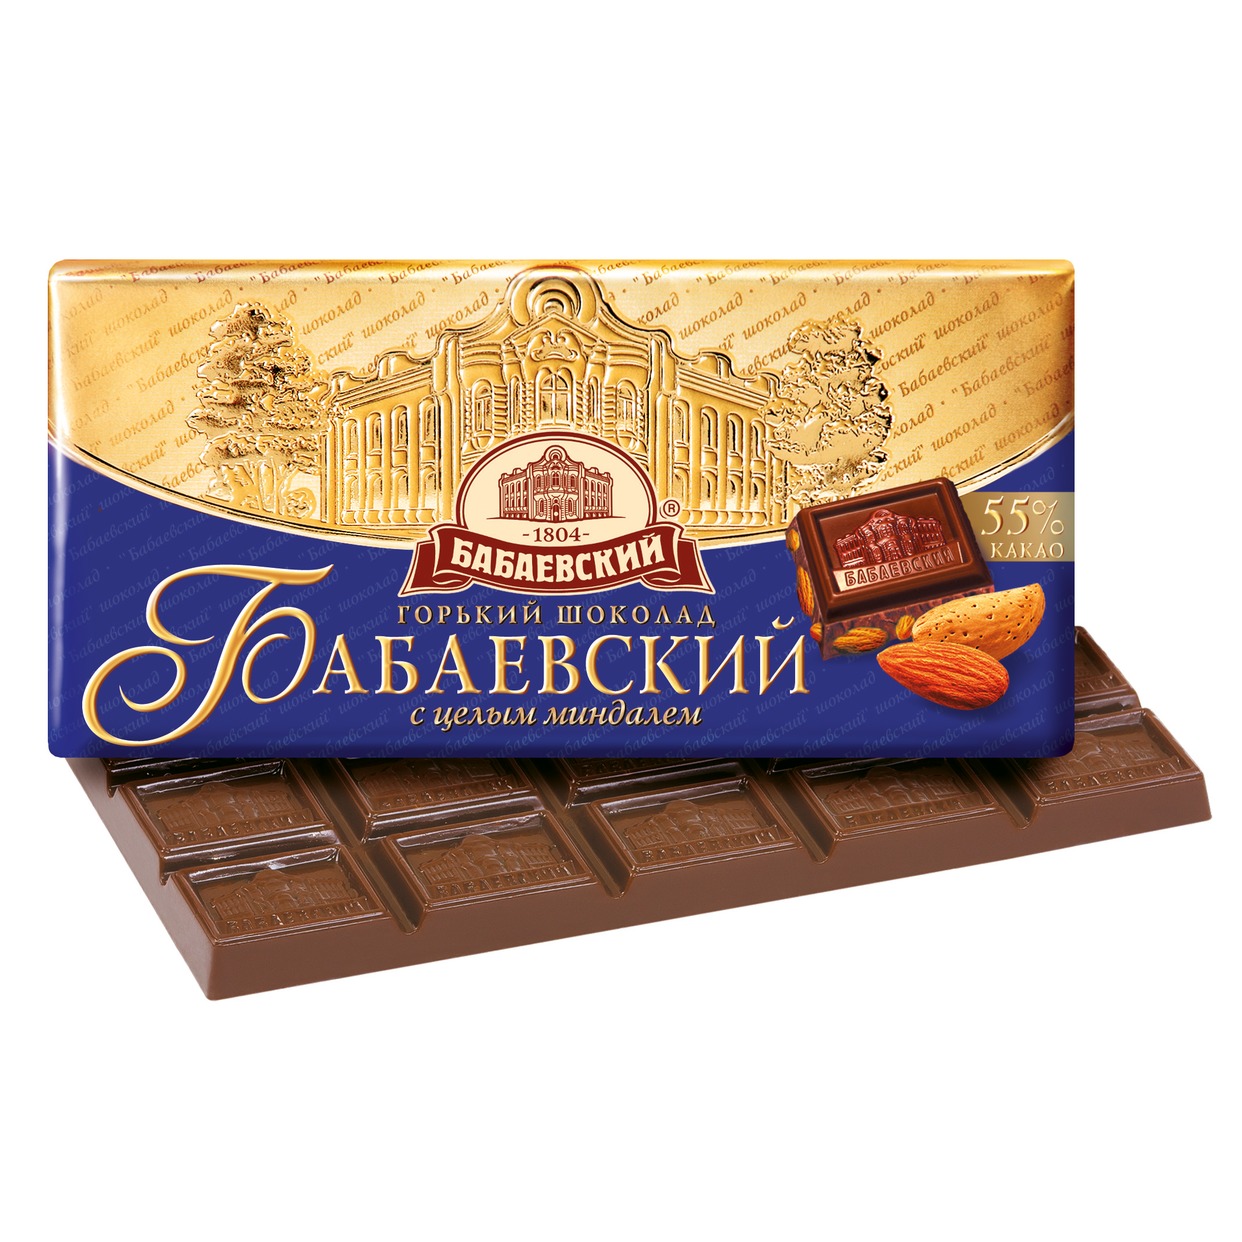 Шоколад Бабаевский Темный с целым миндалем 100г по акции в Пятерочке